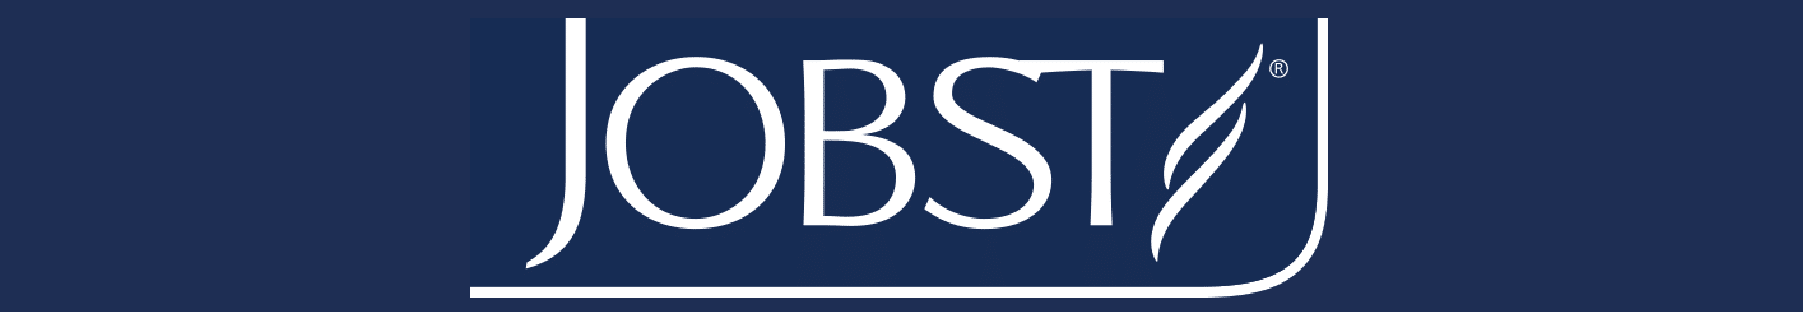 Jobst Logo Button